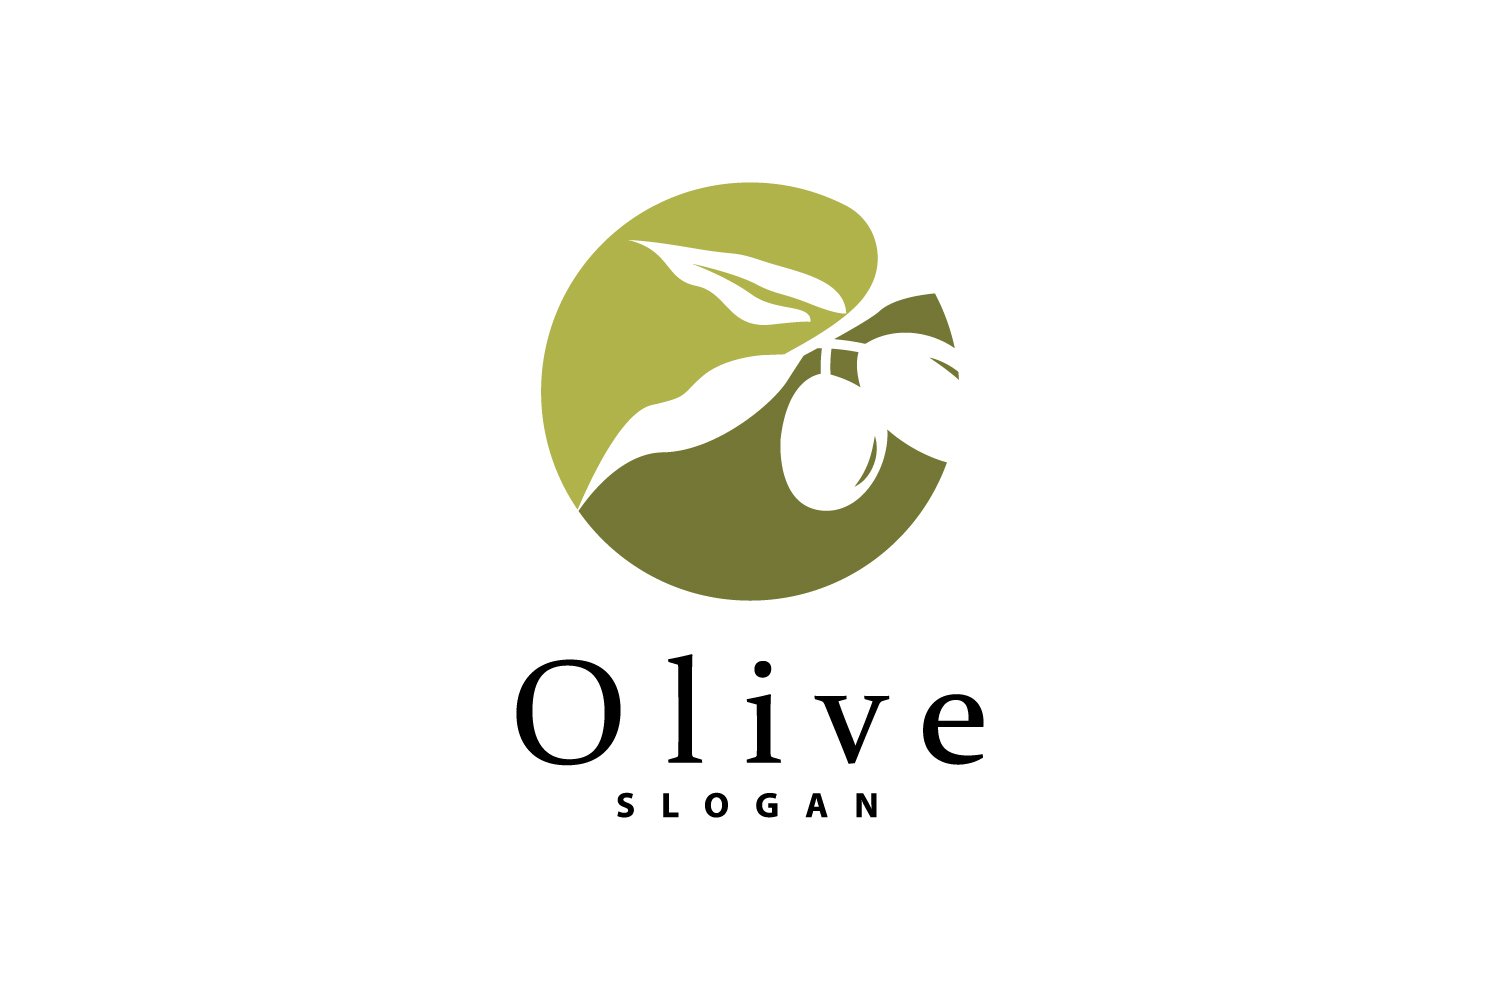 Olive Oil Logo Olive Leaf PlantV45